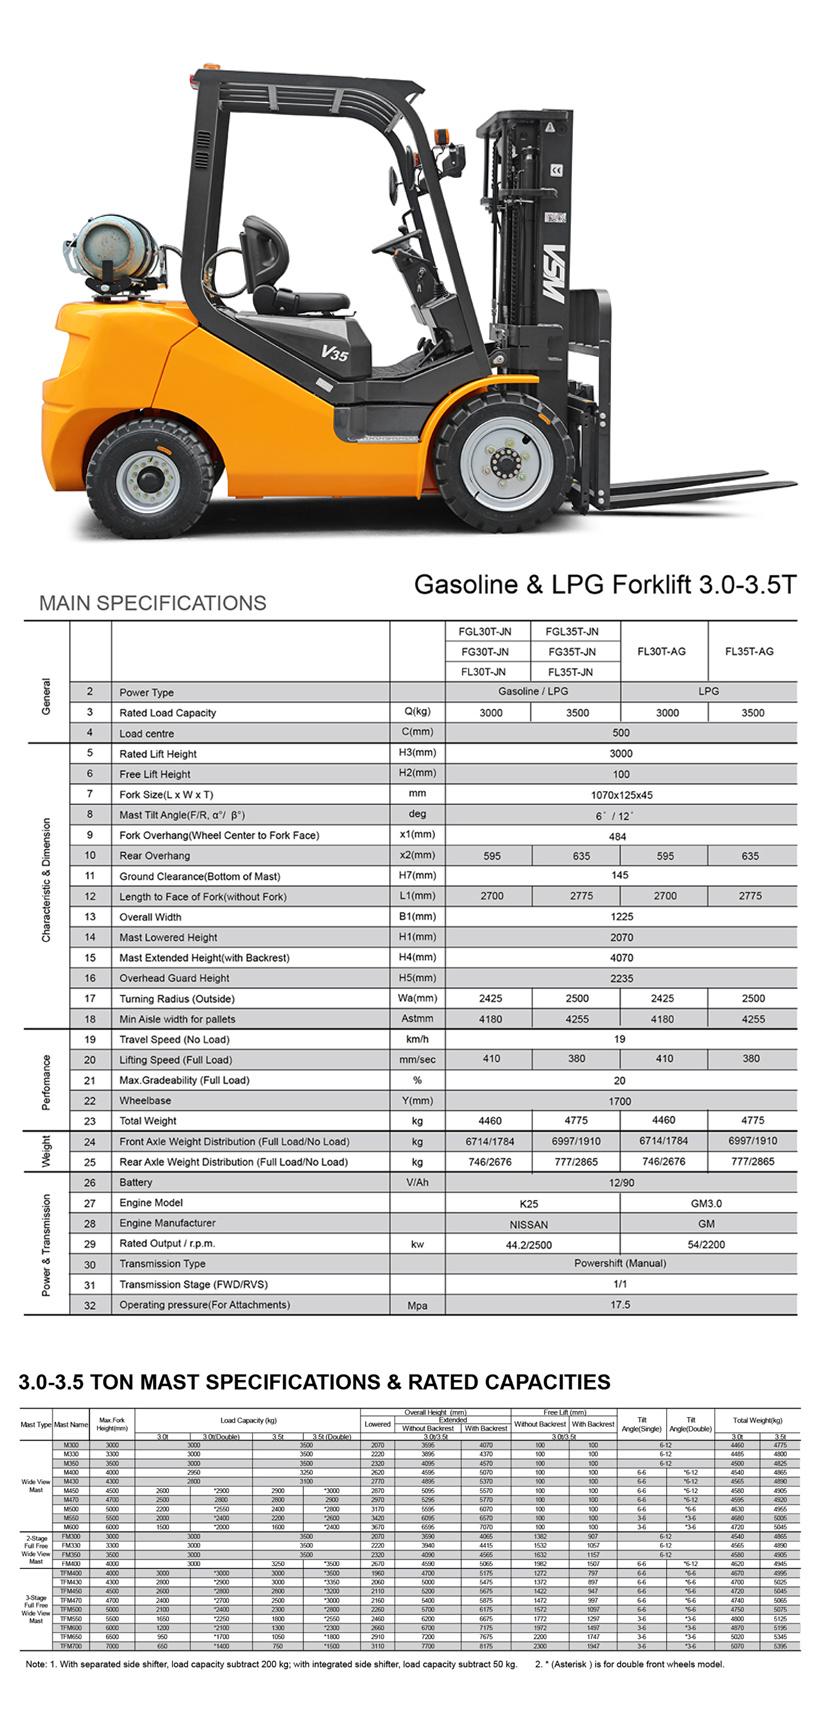 Fgl30 3ton LPG Forklift with Duplex/Triplex Mast, Lift 3m-6m